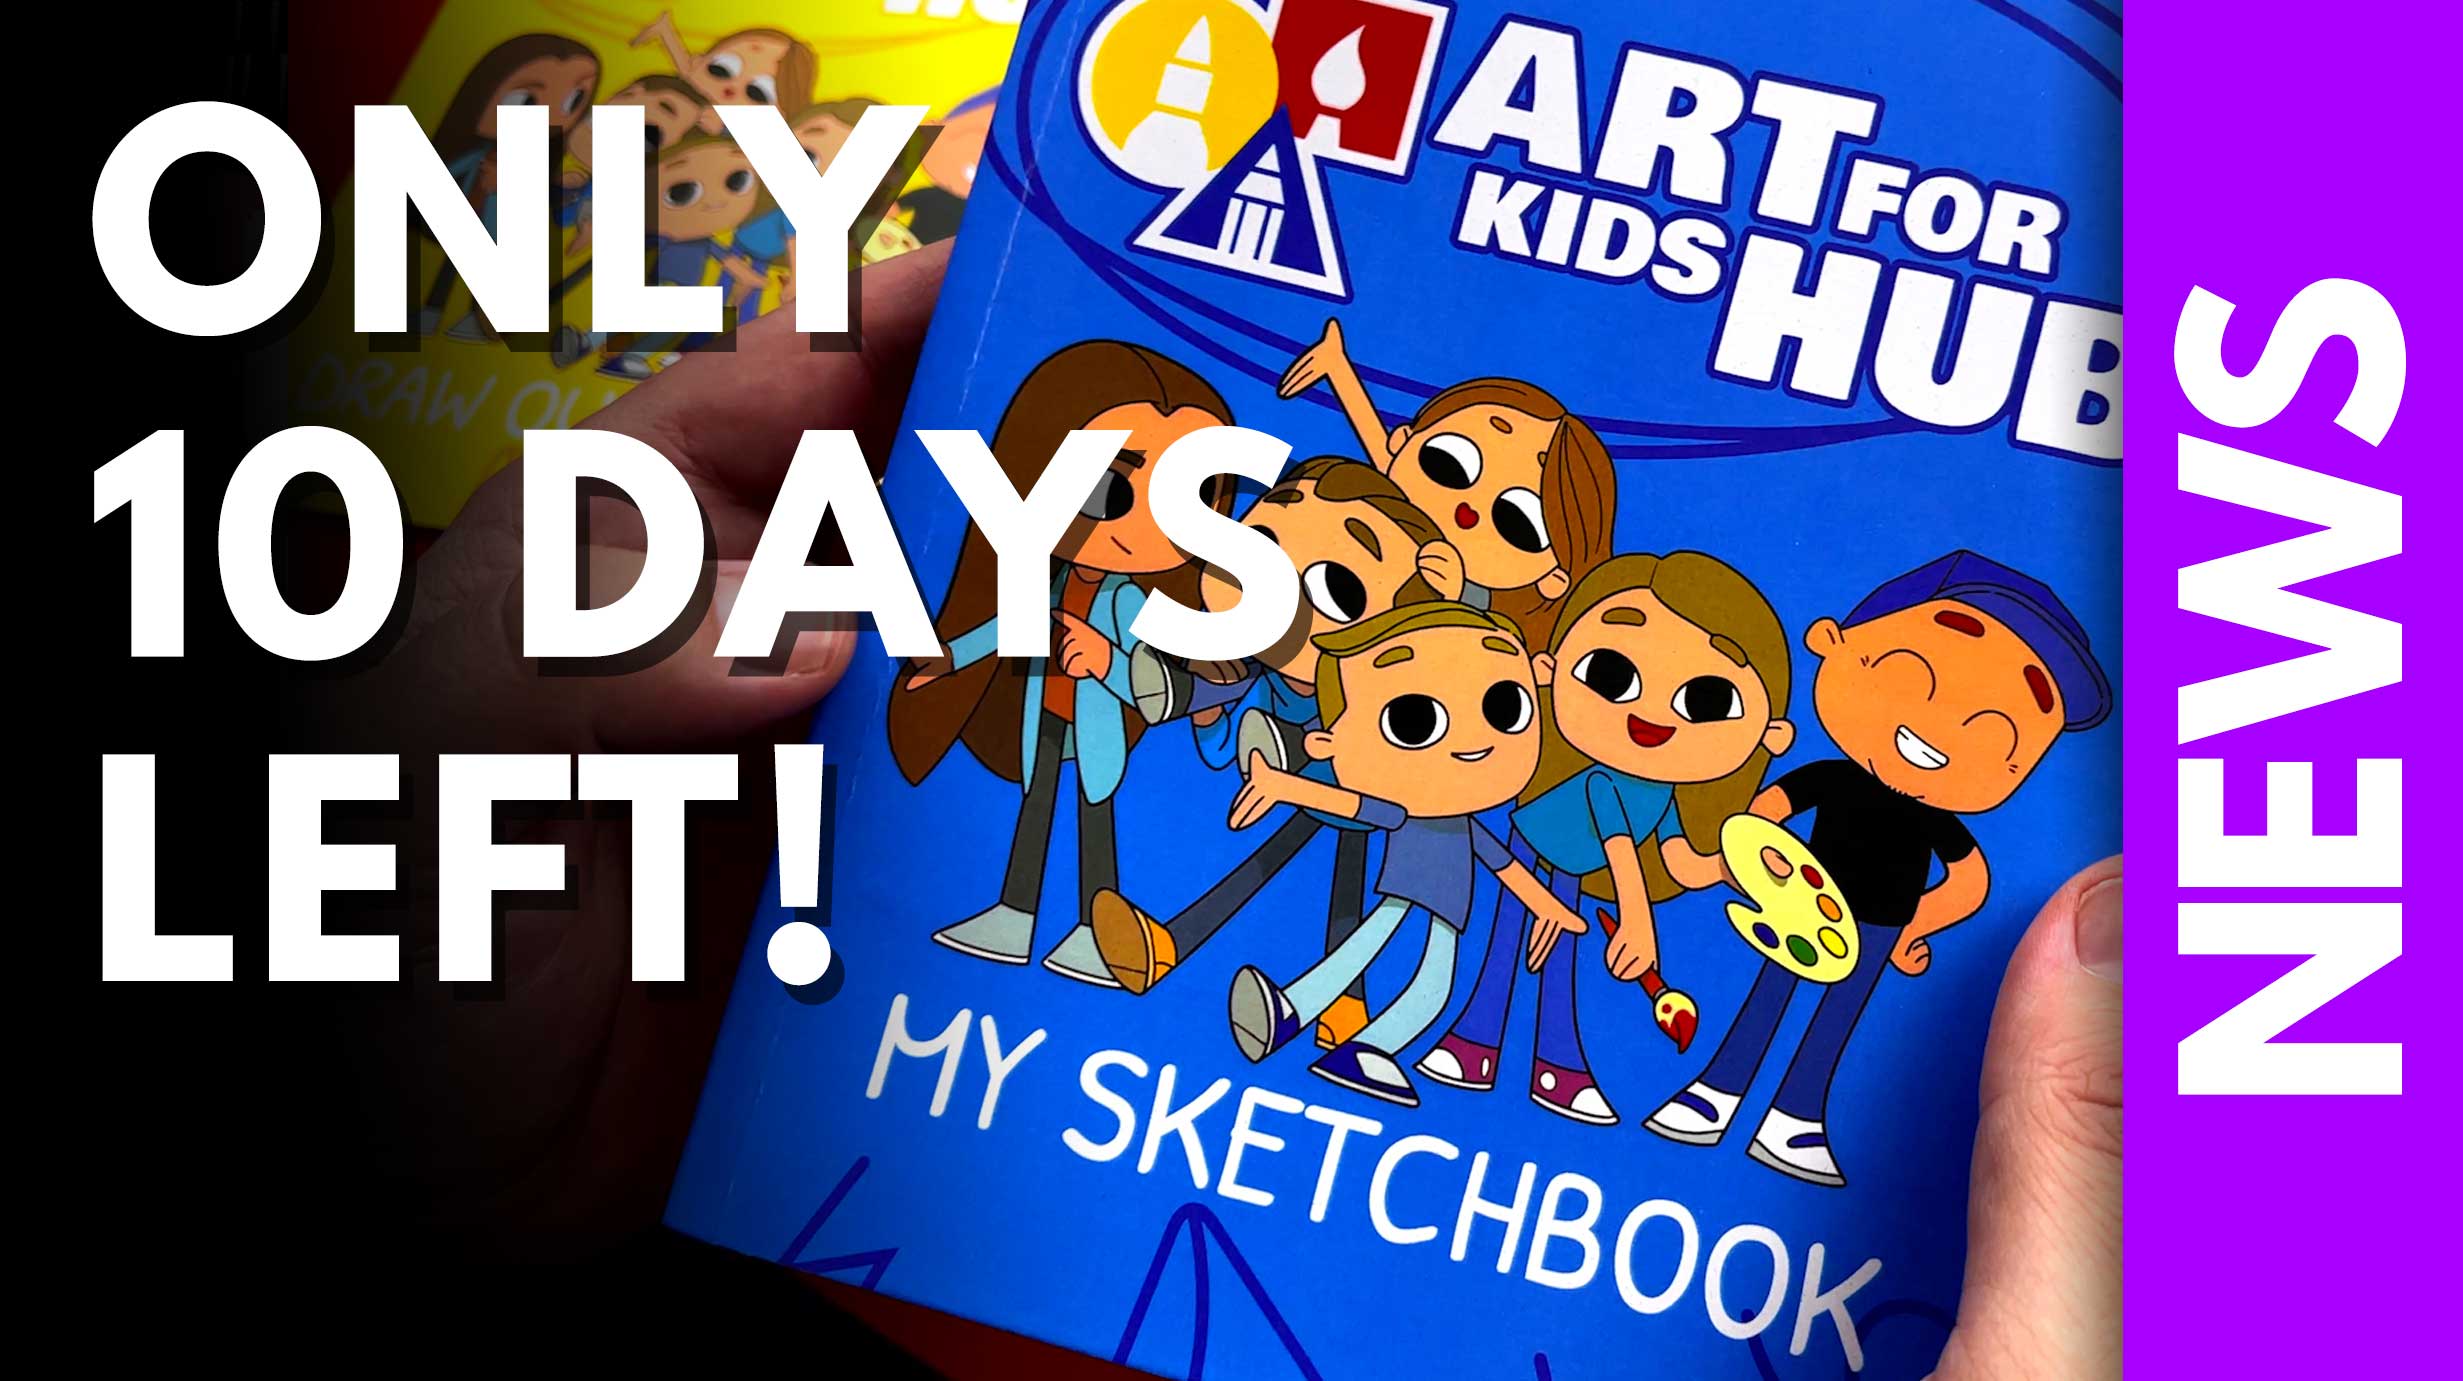 Art for Kids Hub Sketchbook